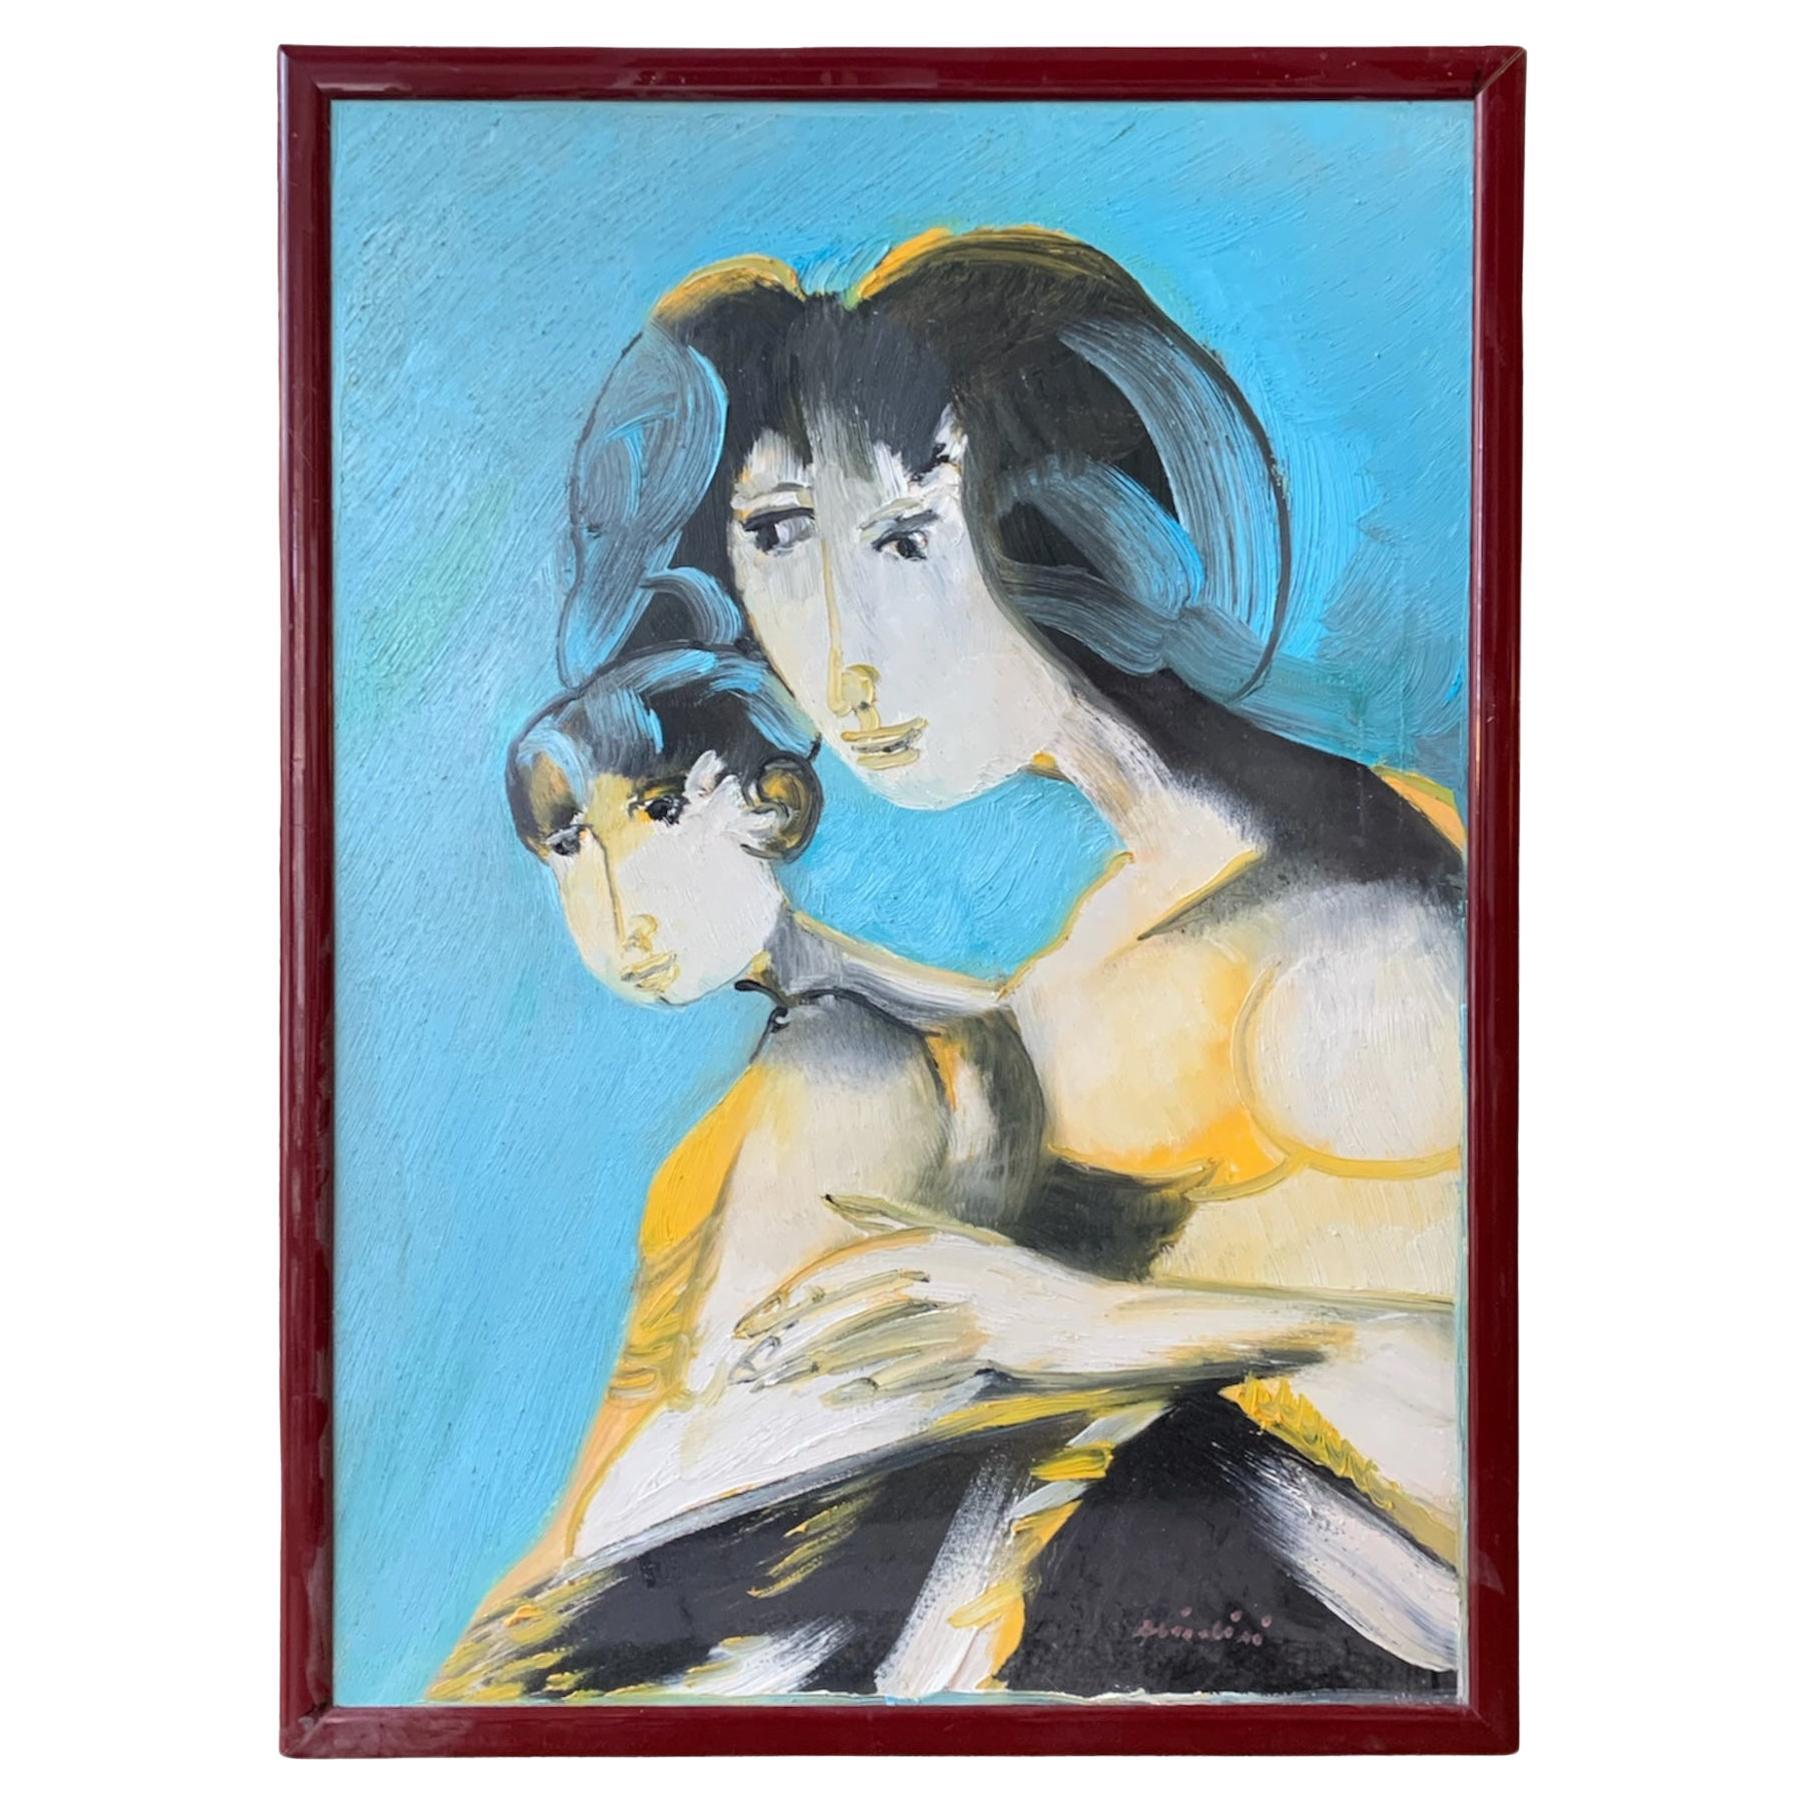 Peinture à l'huile sur toile de Remo Brindisi représentant la maternité, années 1970